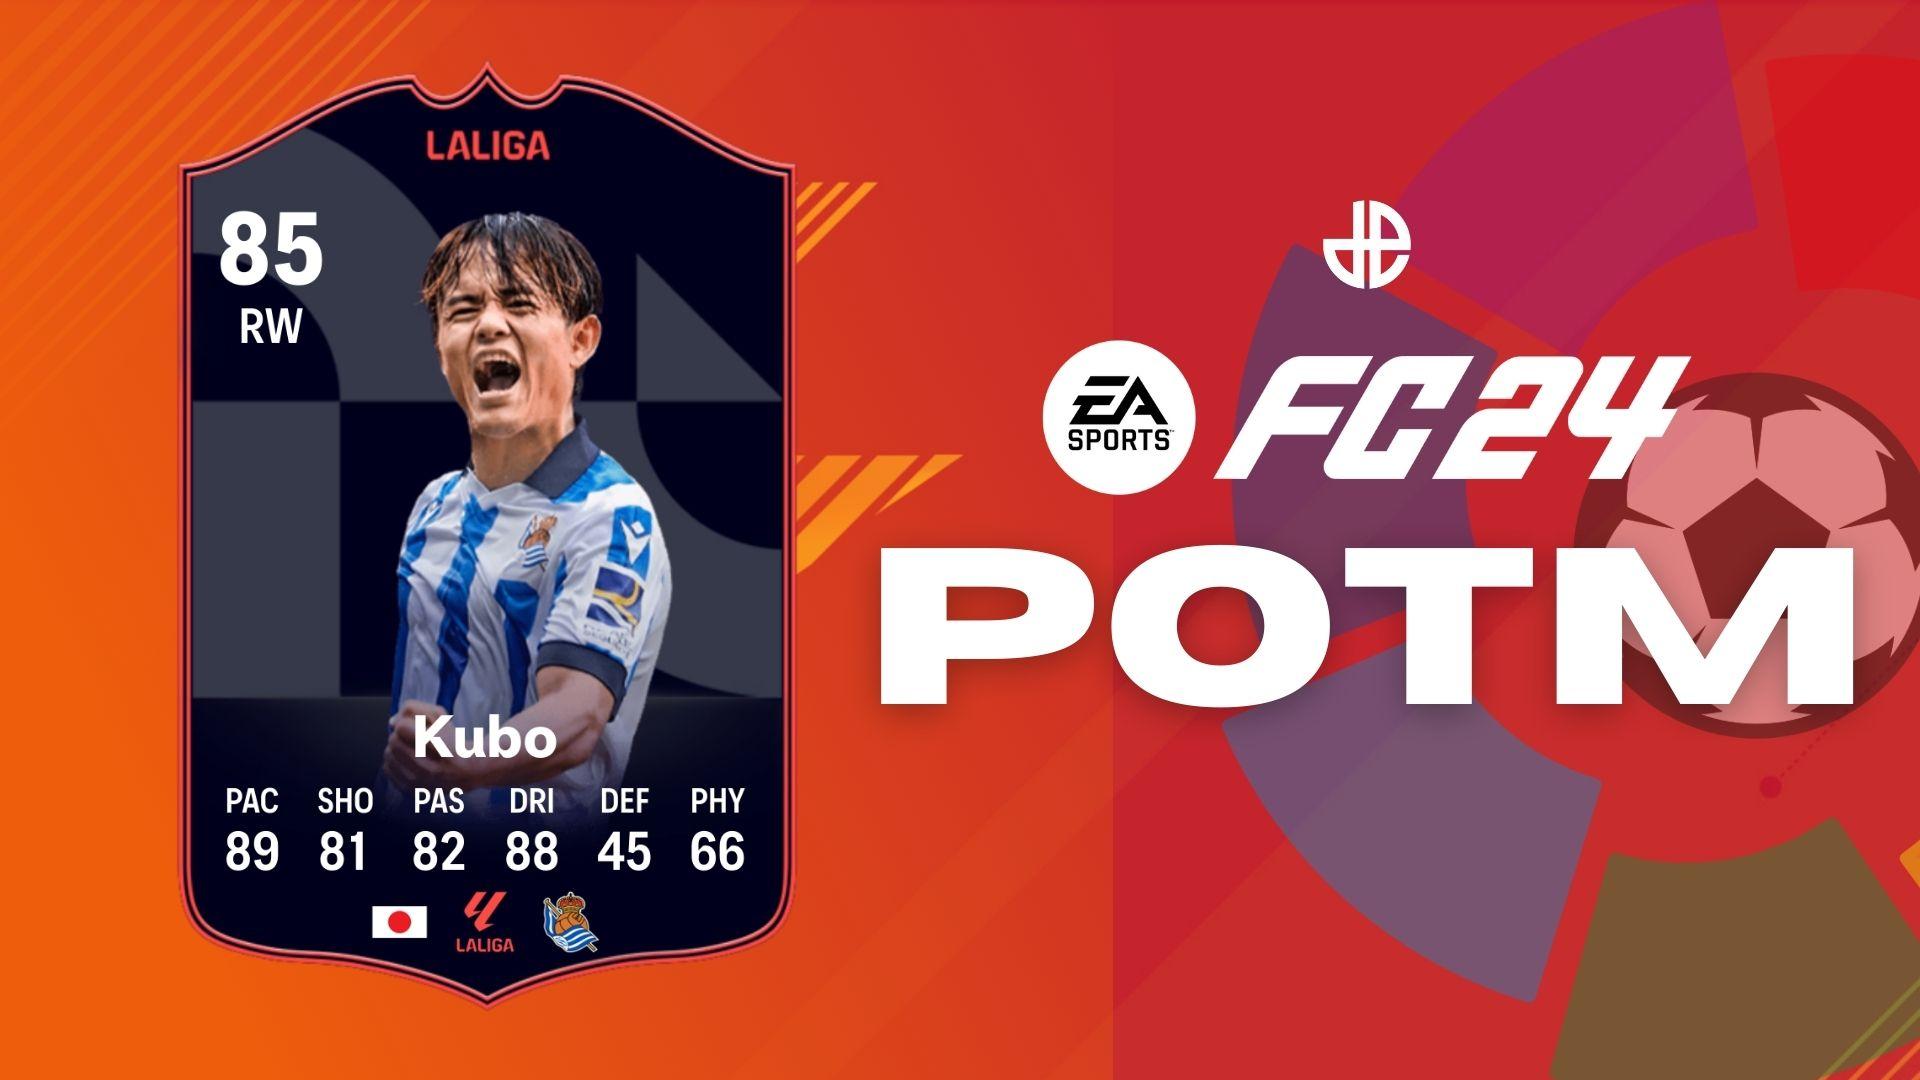 Kubo POTM card on orange background with La Liga logo and EA SPORTS logo